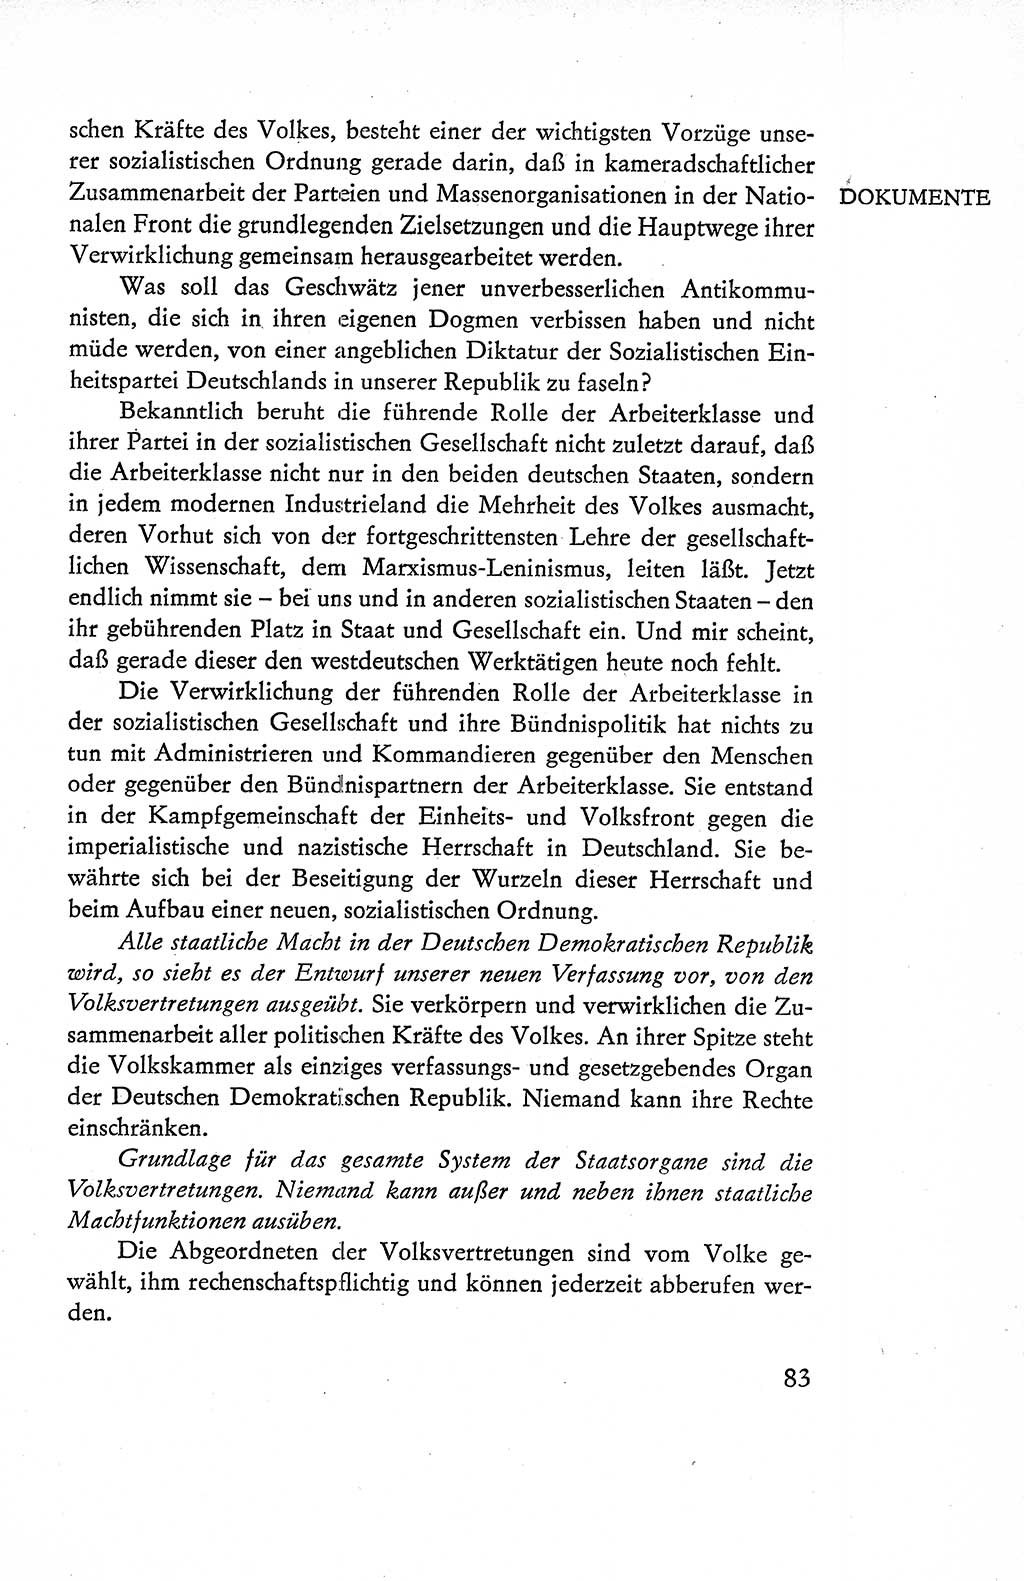 Verfassung der Deutschen Demokratischen Republik (DDR), Dokumente, Kommentar 1969, Band 1, Seite 83 (Verf. DDR Dok. Komm. 1969, Bd. 1, S. 83)